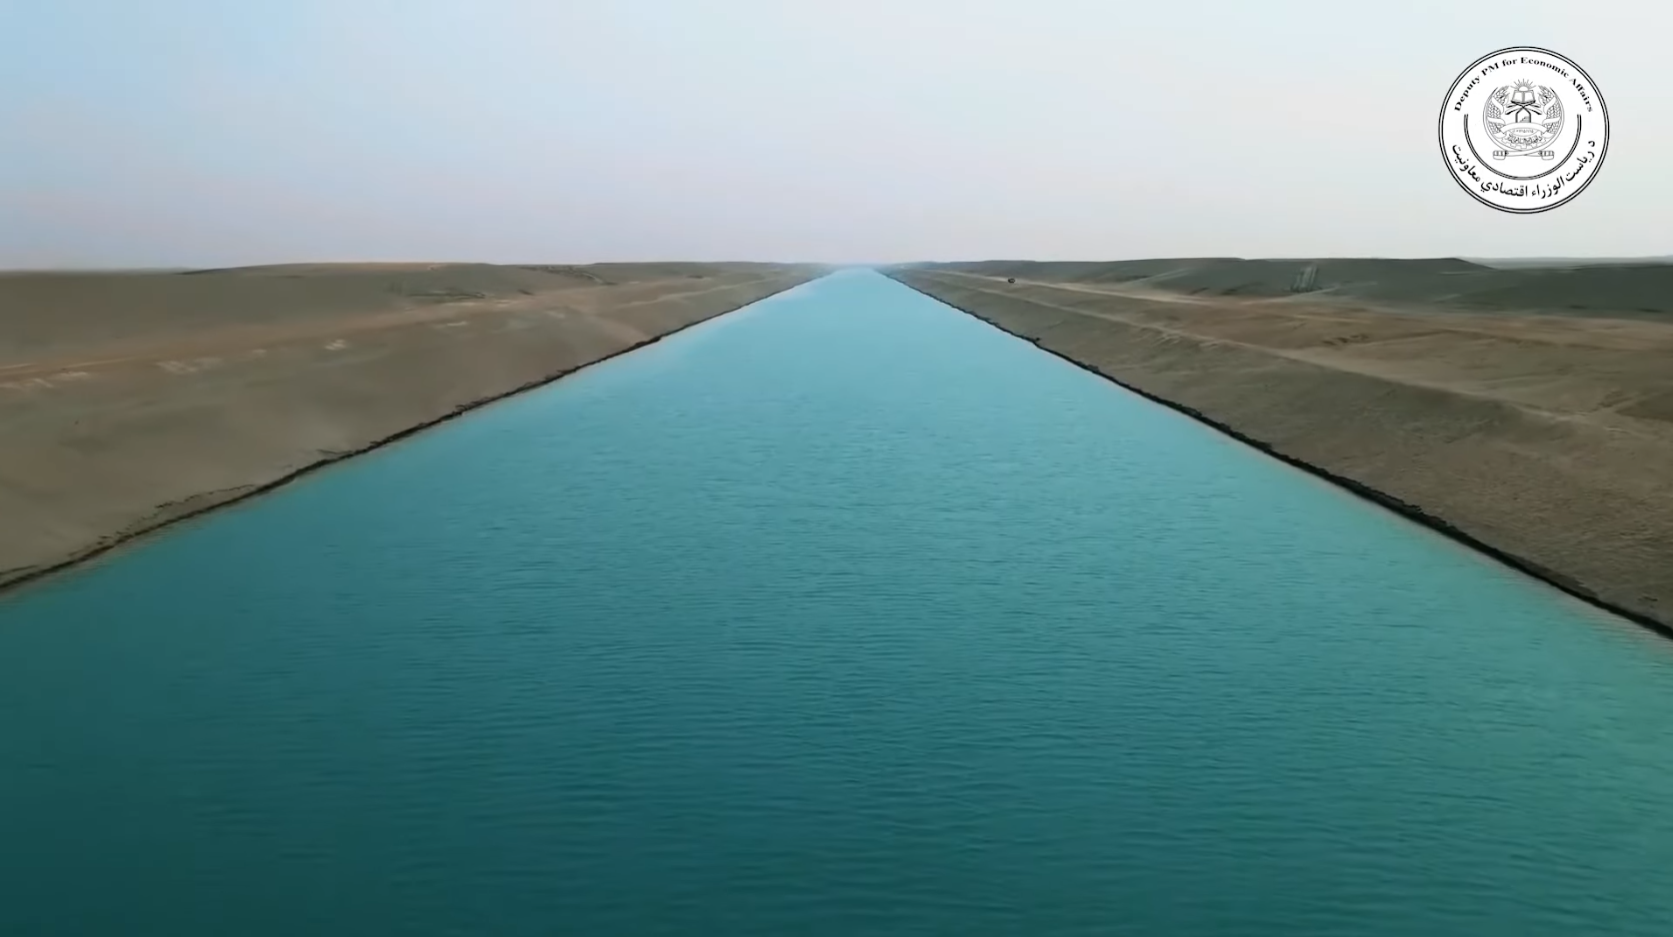 More information about "Το μεγαλύτερο τεχνητό ποτάμι στον κόσμο στο Αφγανιστάν - Κανάλι Qosh Tepa:"